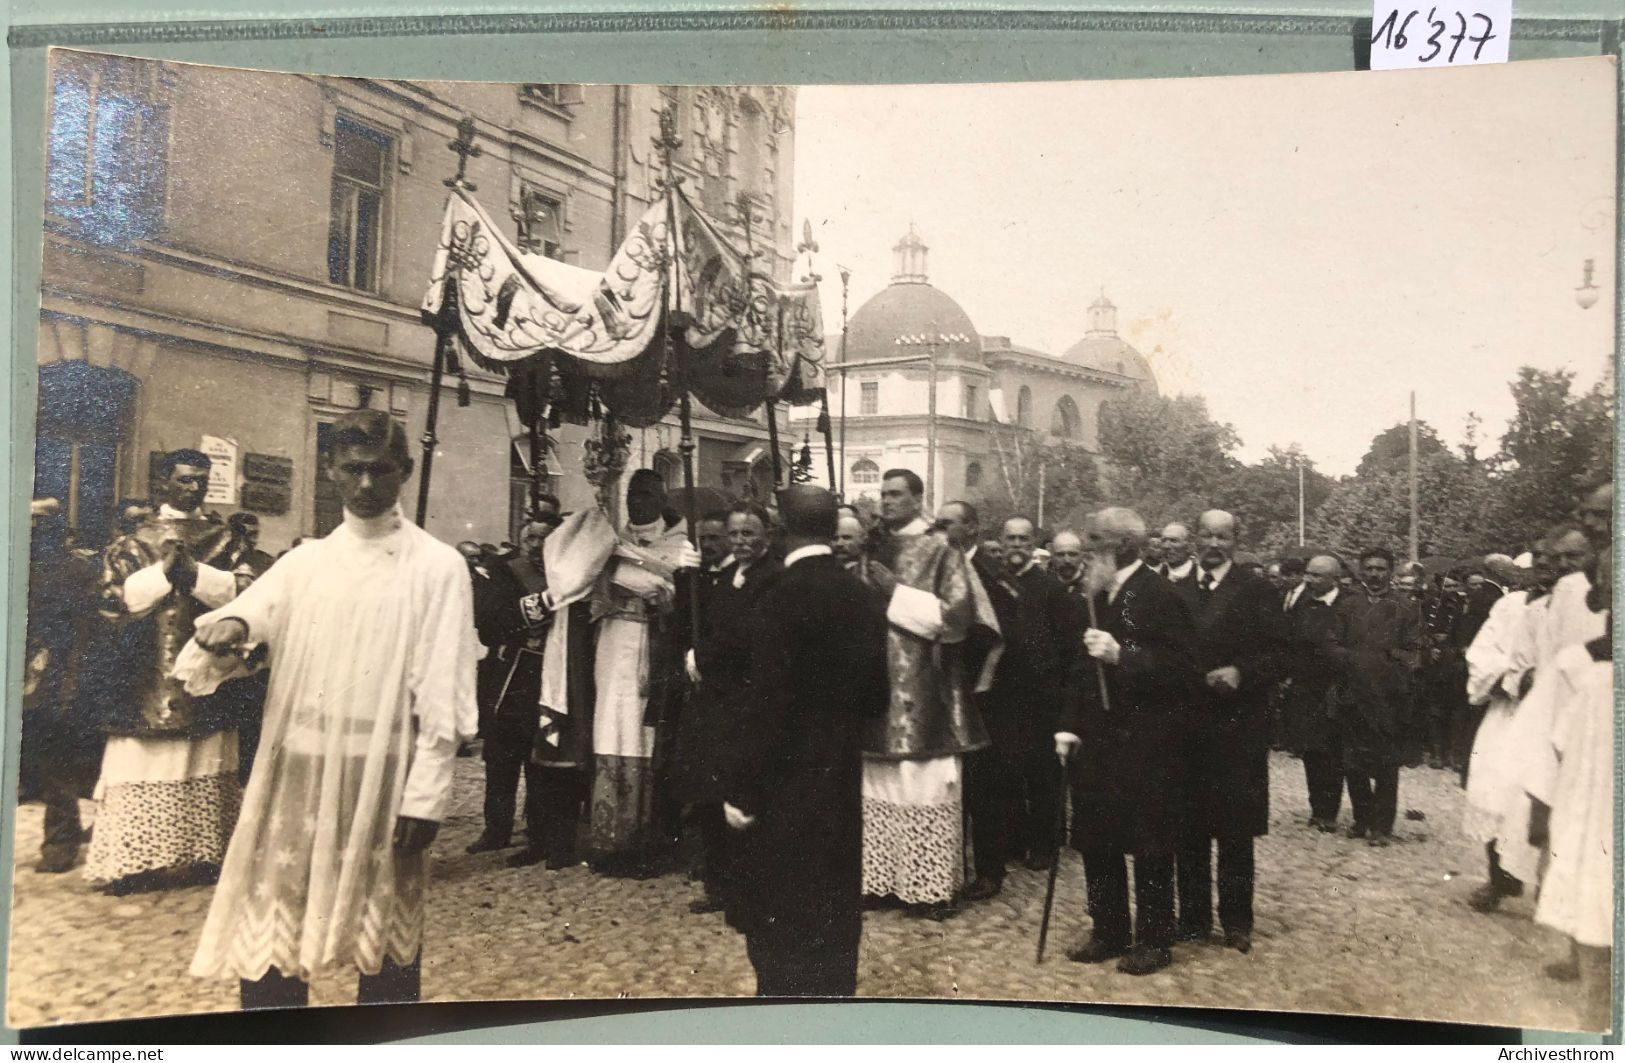 Wilno : 1917 Procession Autour De La Cathédrale De Vilnius (16'377) - Lituanie